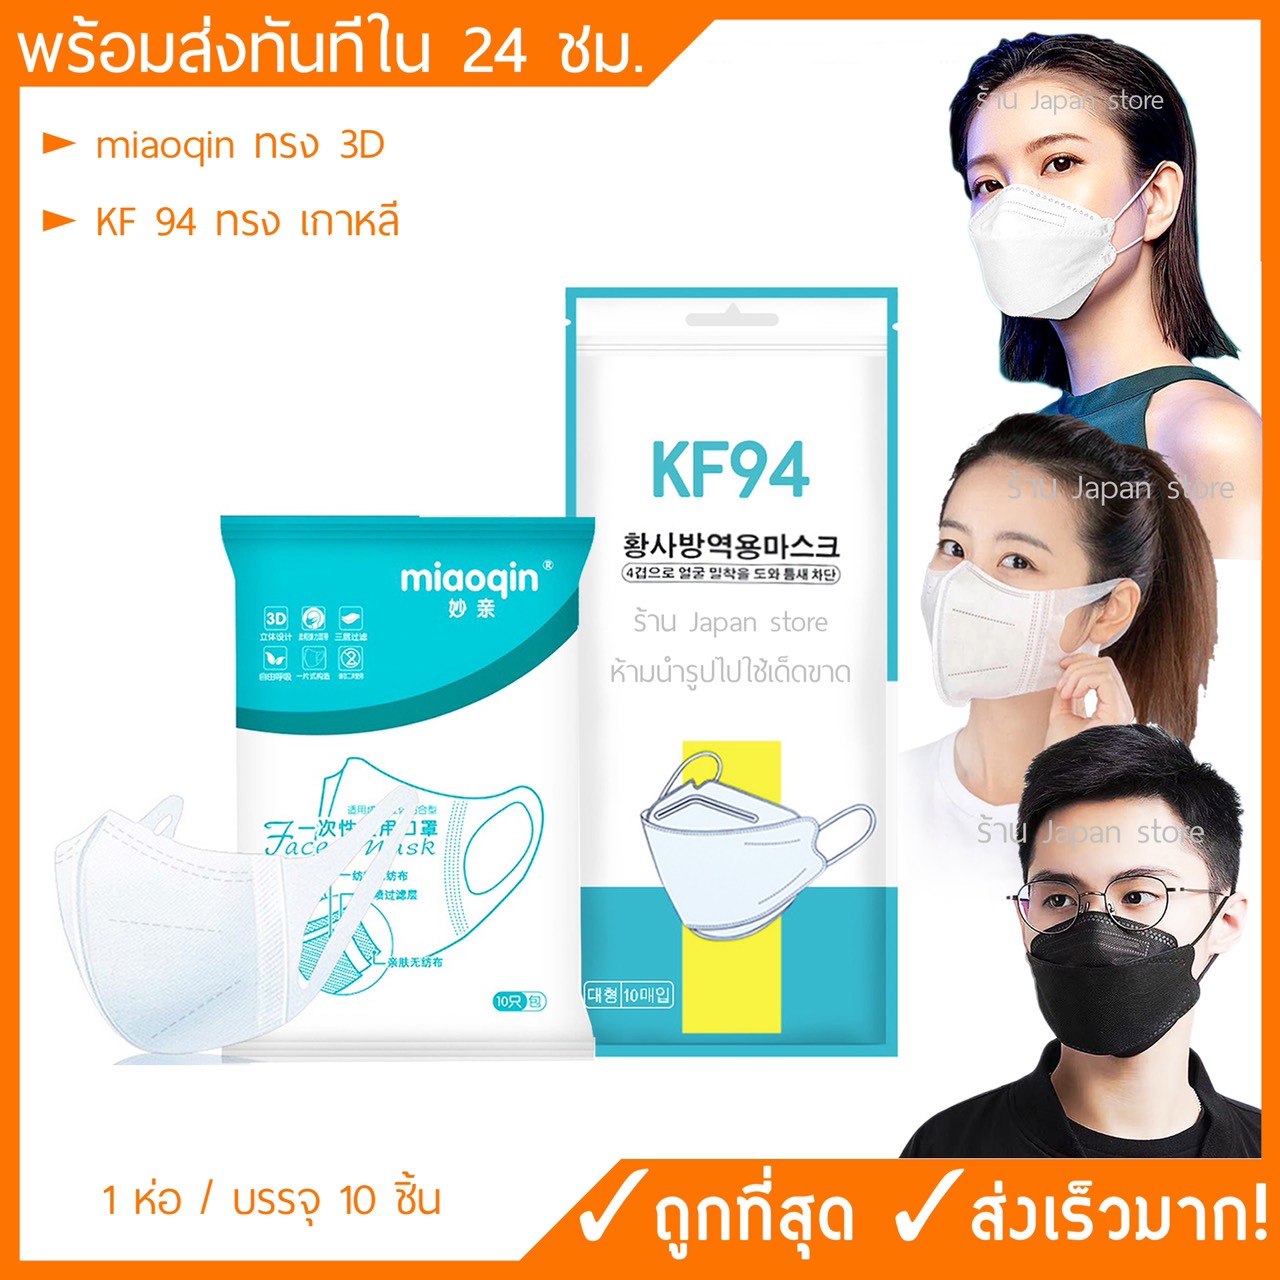 [พร้อมส่ง] หน้ากากอนามัย 3D Mask แมส แพค 10 ชิ้น  ราคาถูก miaoqin ทรงเดียวกับ Unicharm หน้ากากอนามัย เกาหลี KF94หน้ากากกันฝุ่น pm2.5 หน้ากากอนามัยผู้ใหญ่